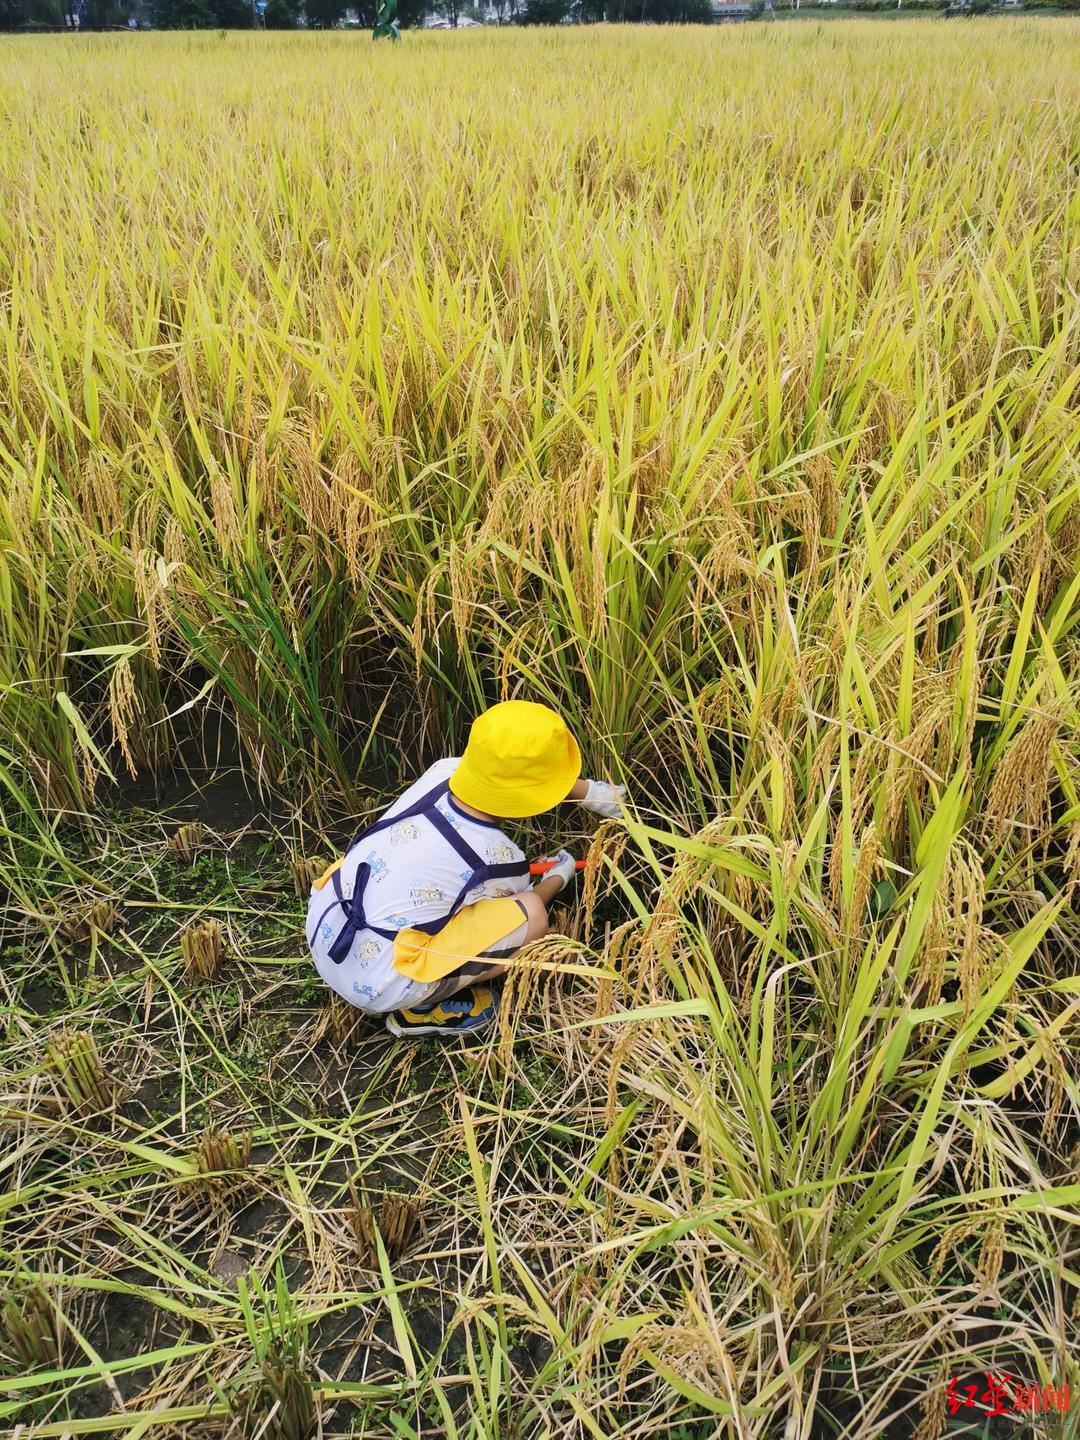 ▲小朋友在稻田里割水稻